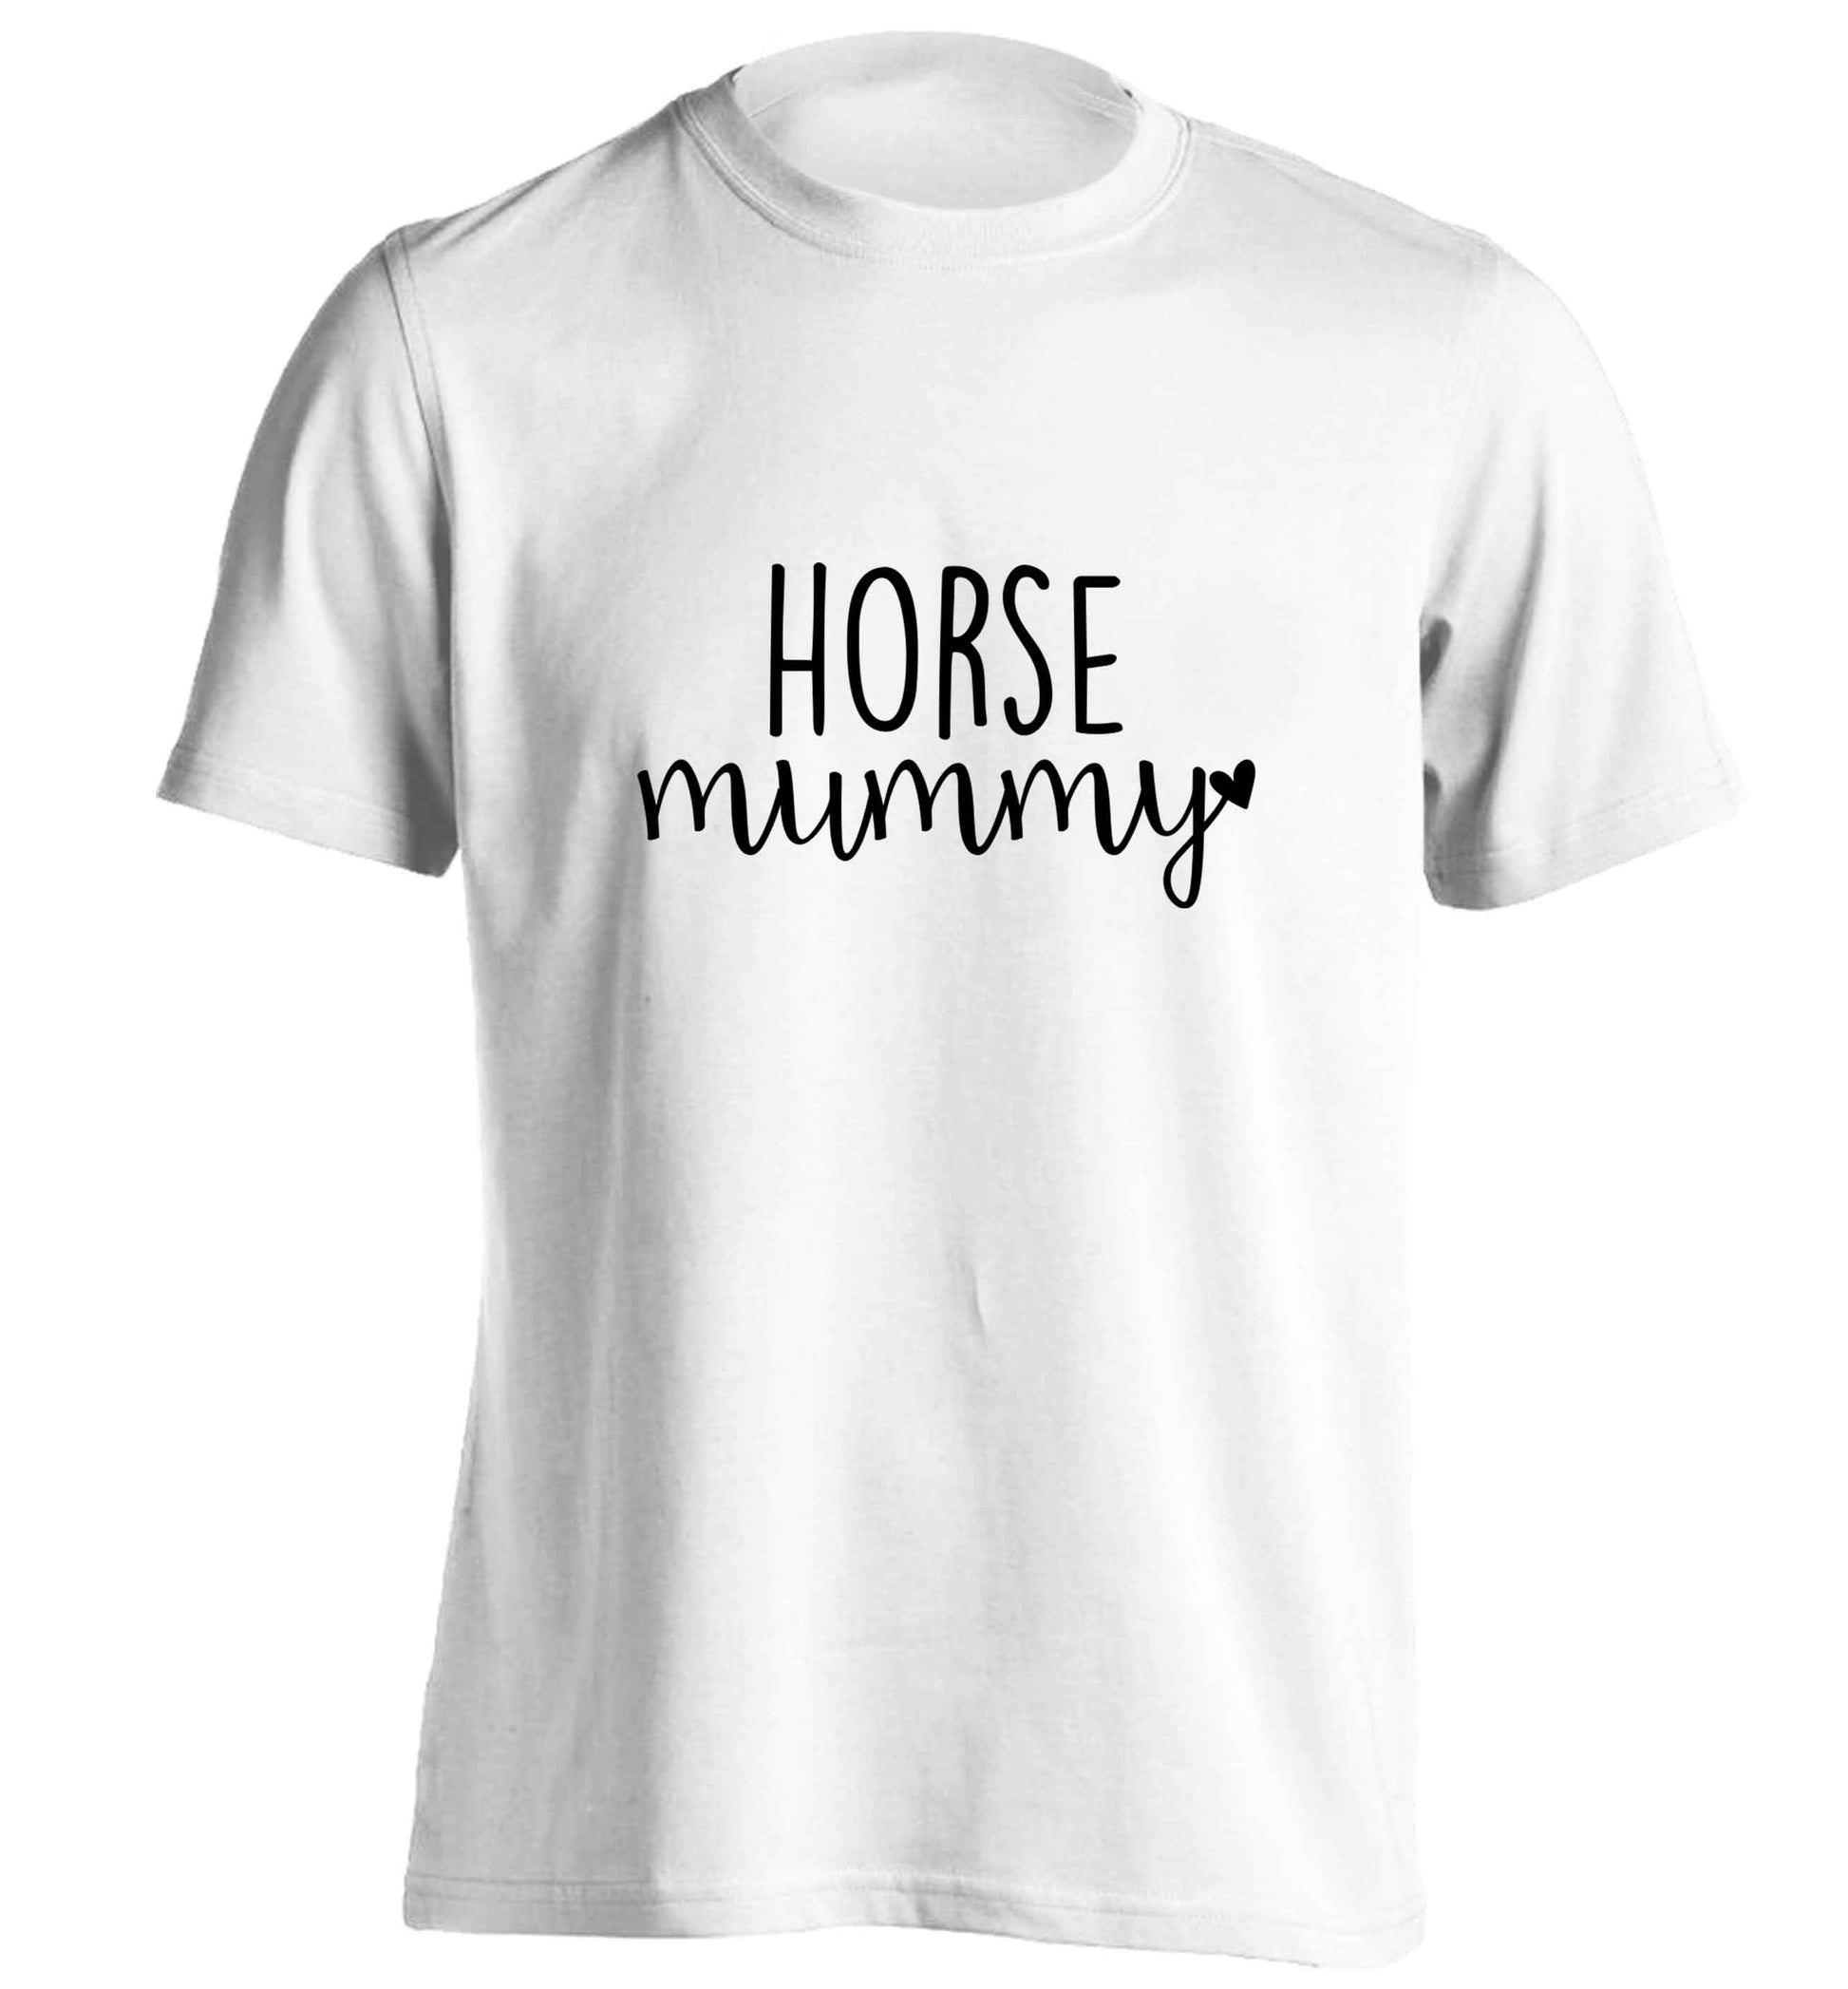 Horse mummy adults unisex white Tshirt 2XL